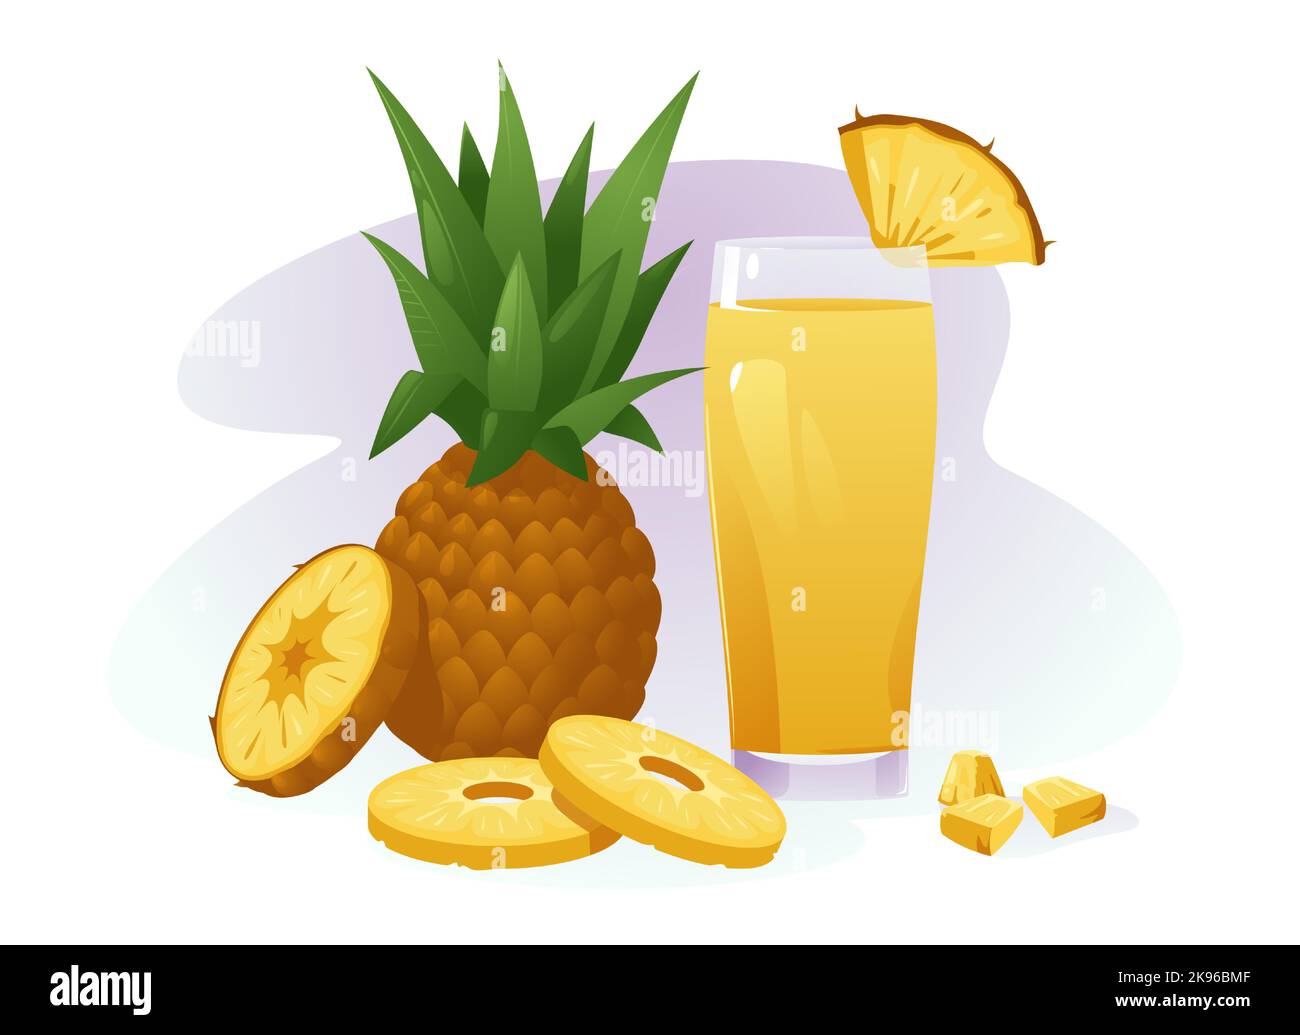 Ananasgetränk. Natürliche frisch leckeren Saft Cocktail, ein Glas tropischen Sommer gesund süß exotischen Getränk Cartoon-Stil. Vektorgrafik Stock Vektor